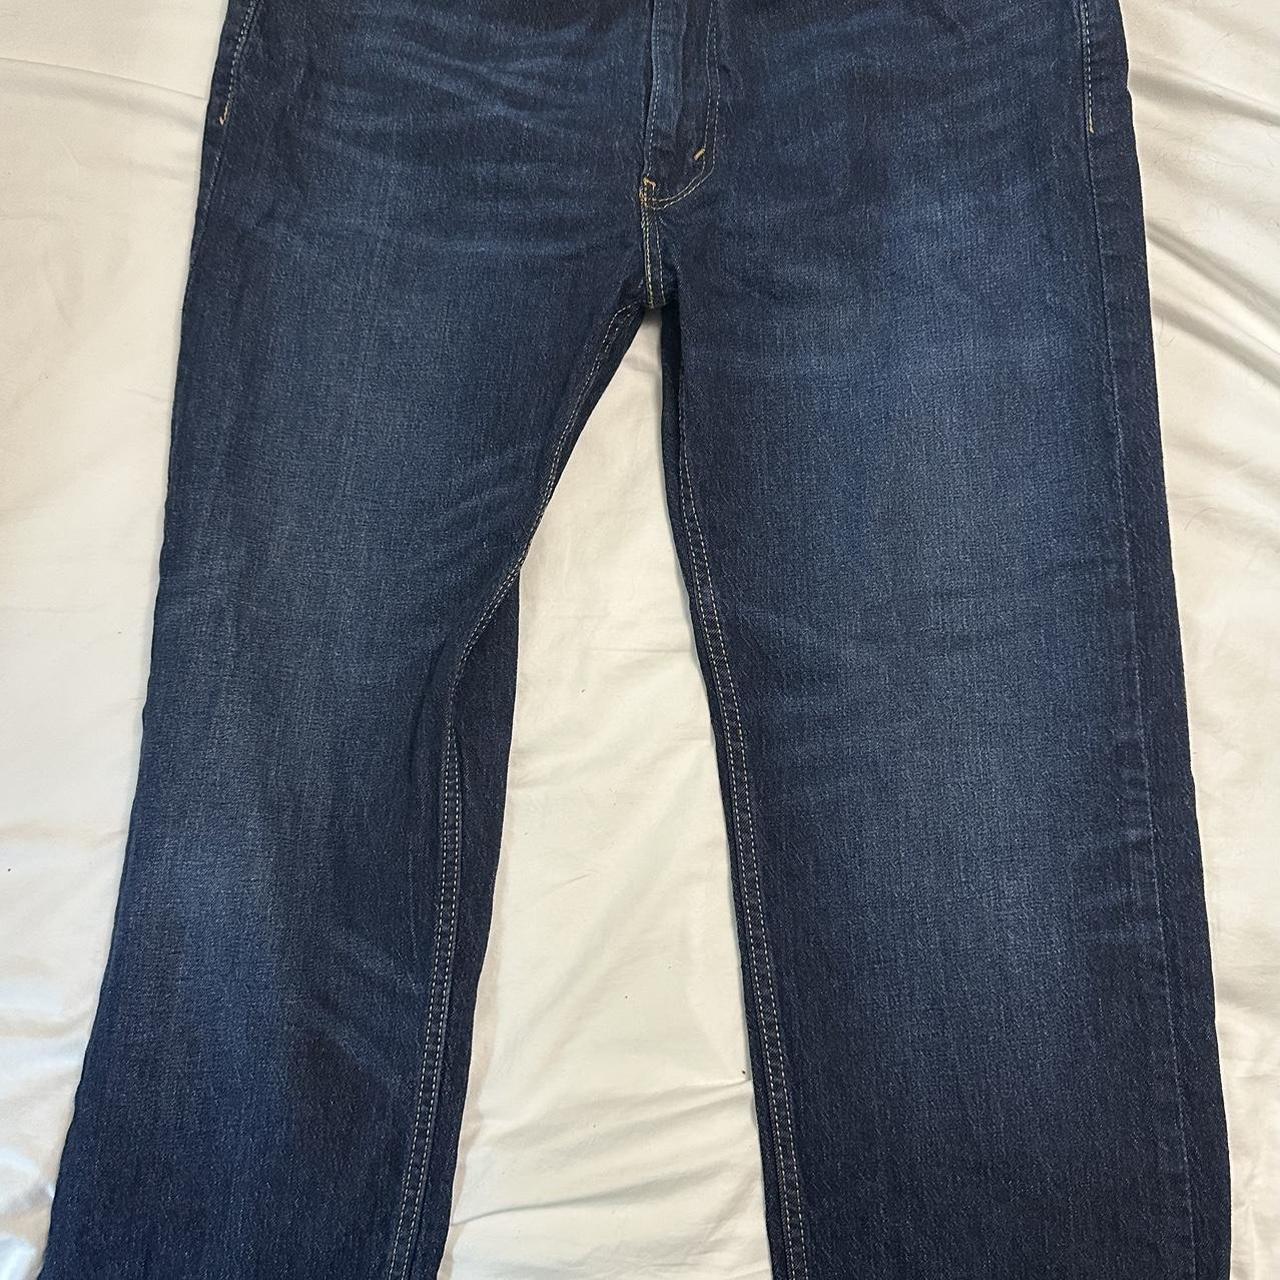 Vintage Levi’s 505 jeans size 35x32 - Depop